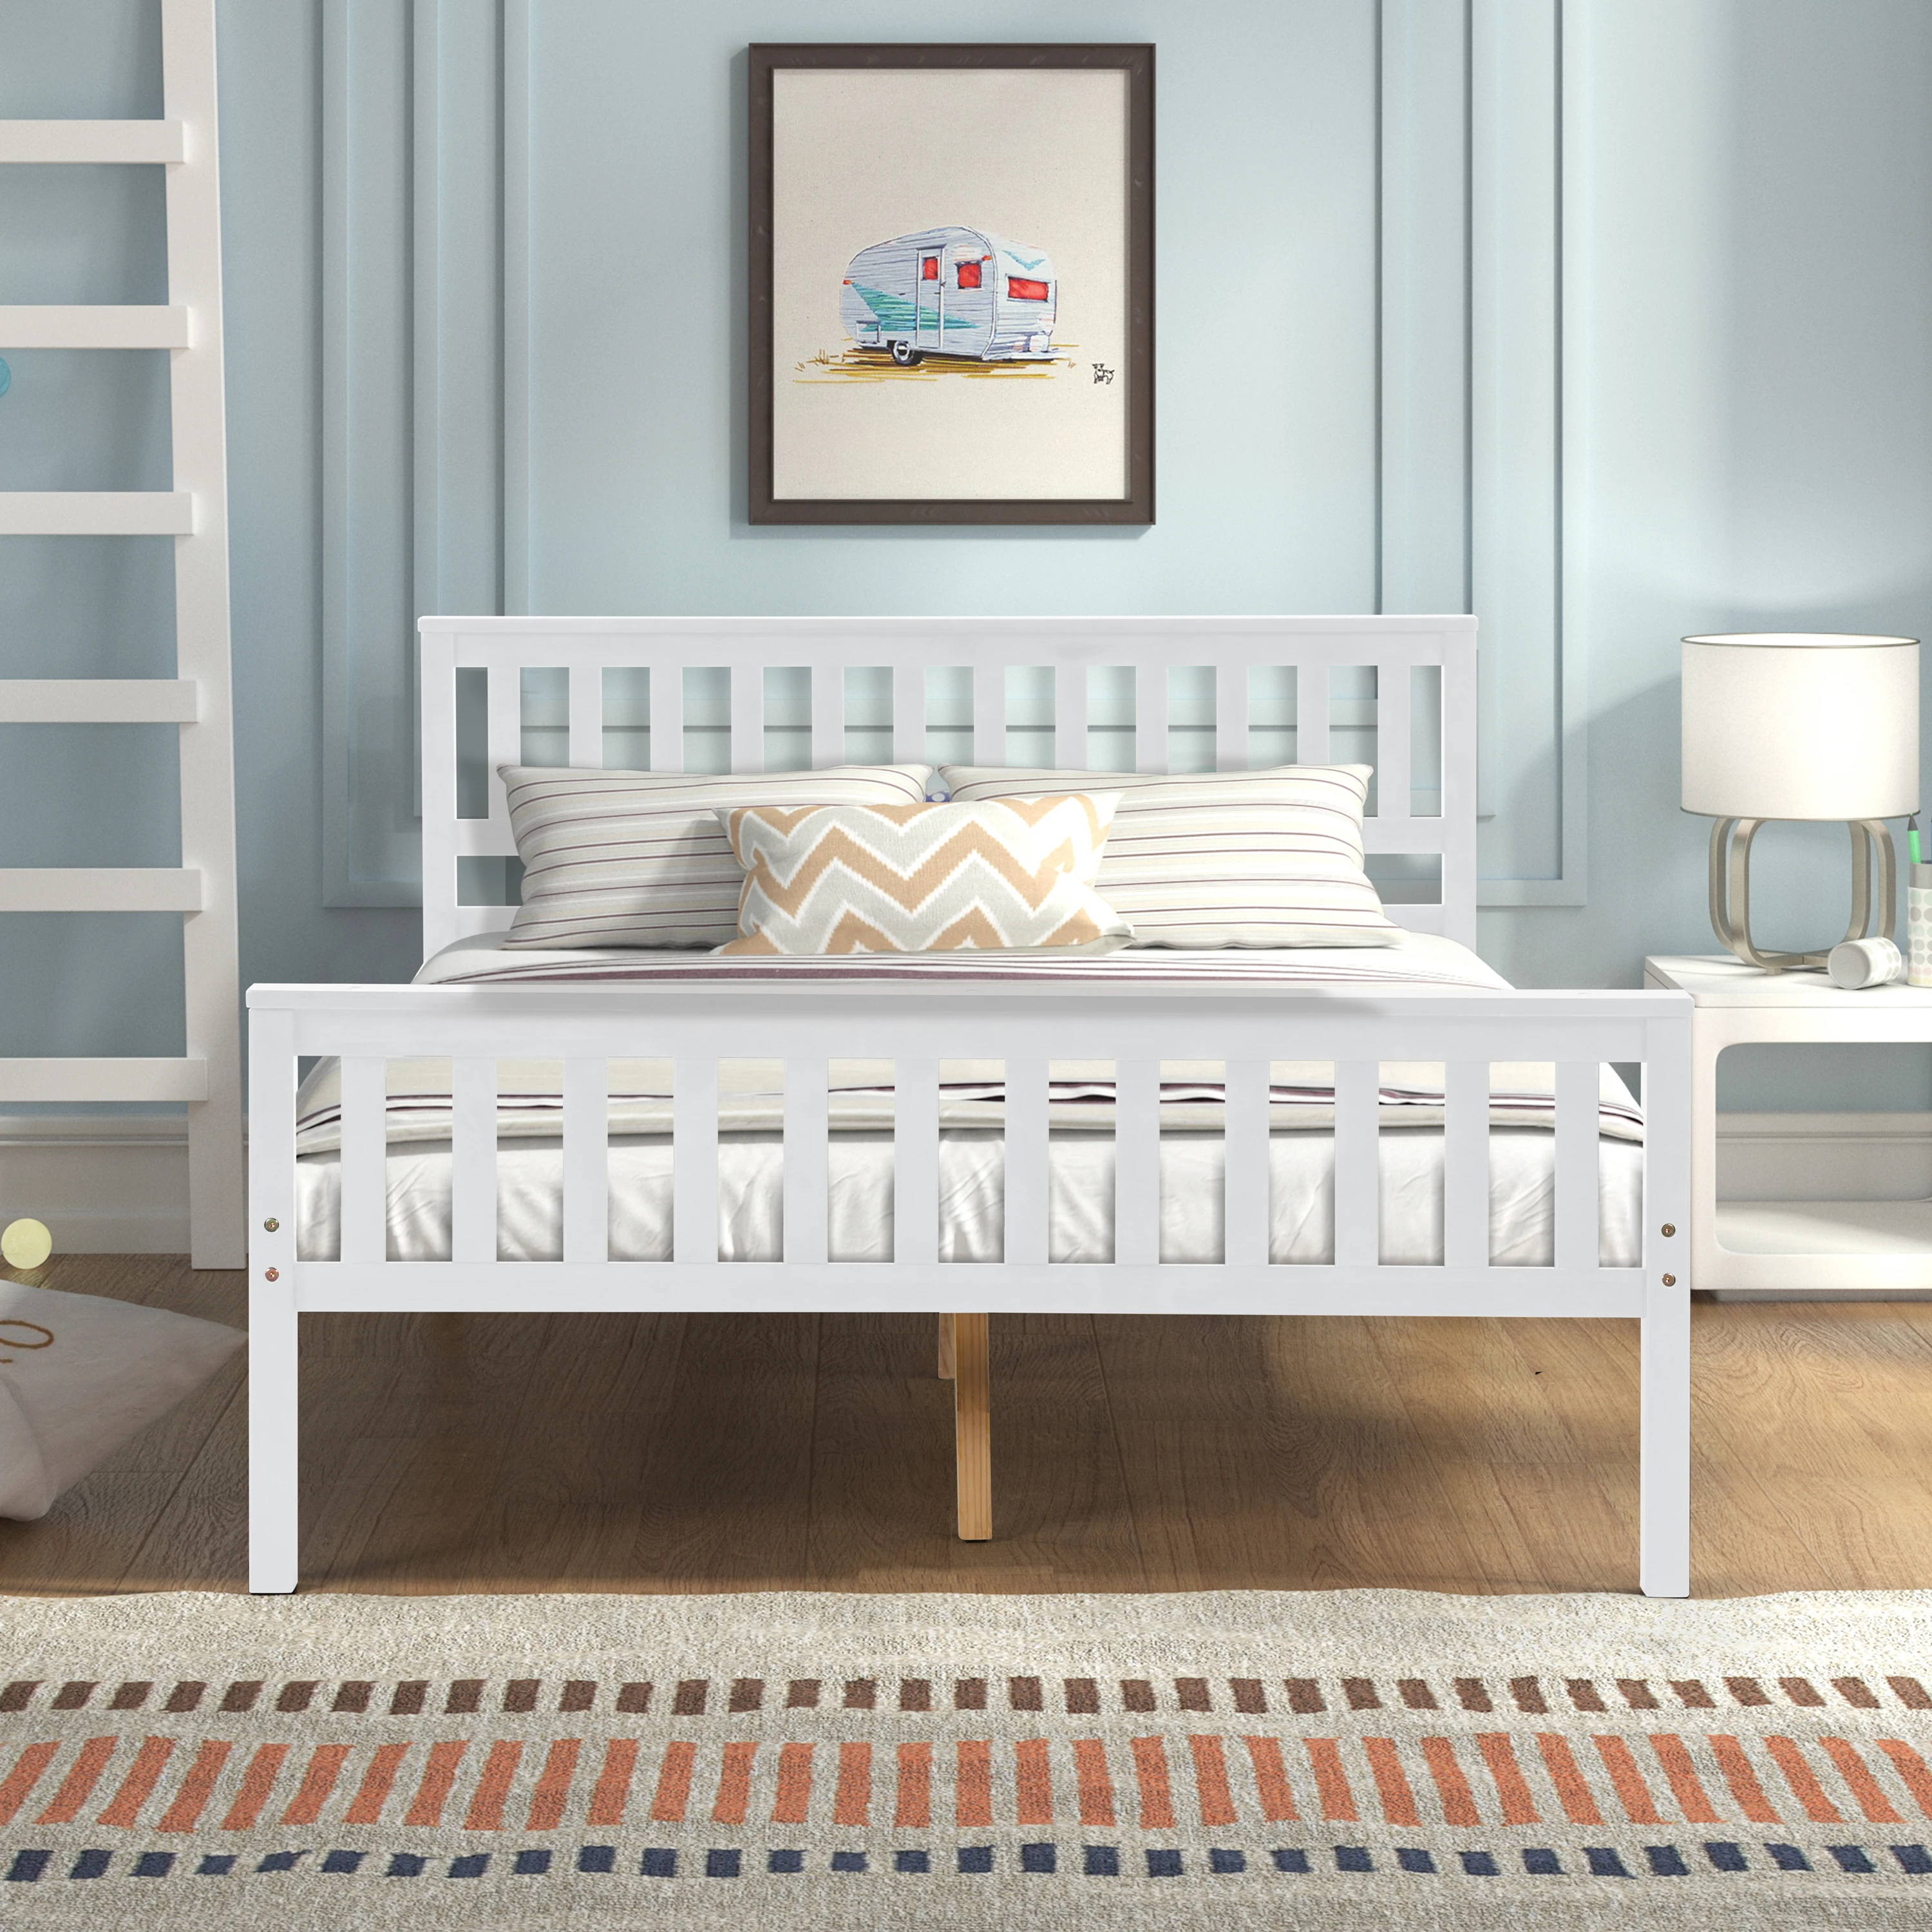 

Полноразмерная кровать с деревянной платформой и изголовьем кровати, мебель для спальни/Подставка под деревянную планку/не требуется коробка с пружиной/простая сборка